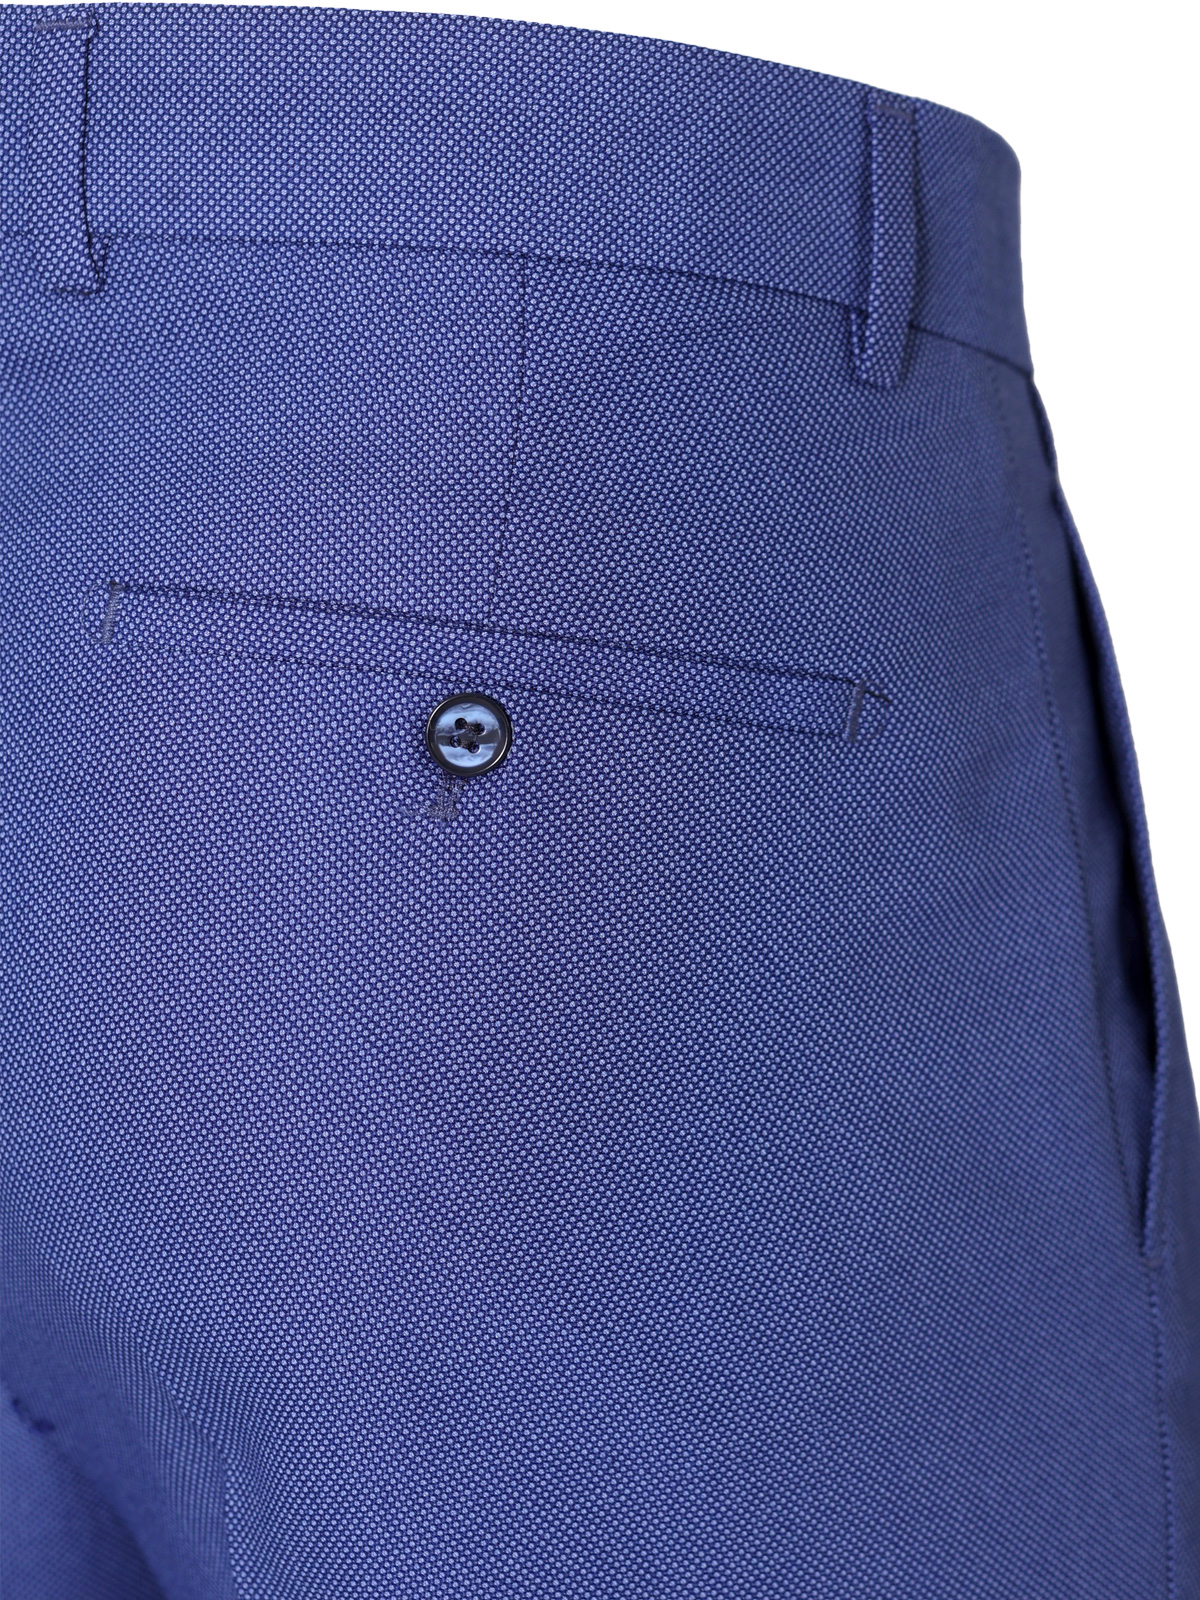 Ανδρικό παντελόνι σε κλασικό μπλε - 63341 € 62.99 img3